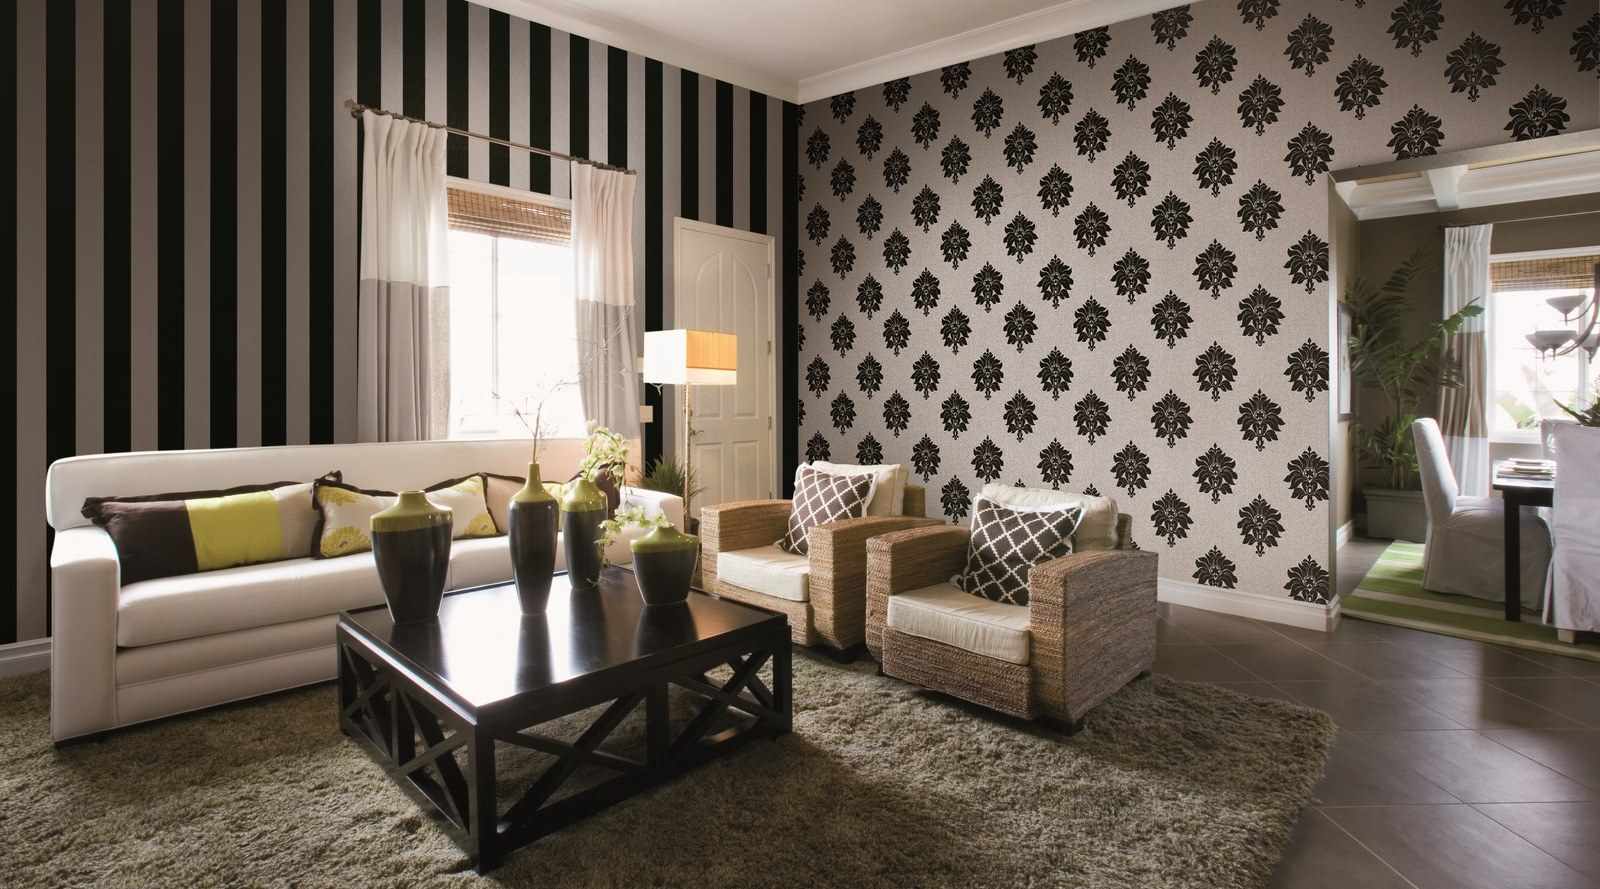 Oturma odası için parlak bir duvar kağıdı tasarımı örneği